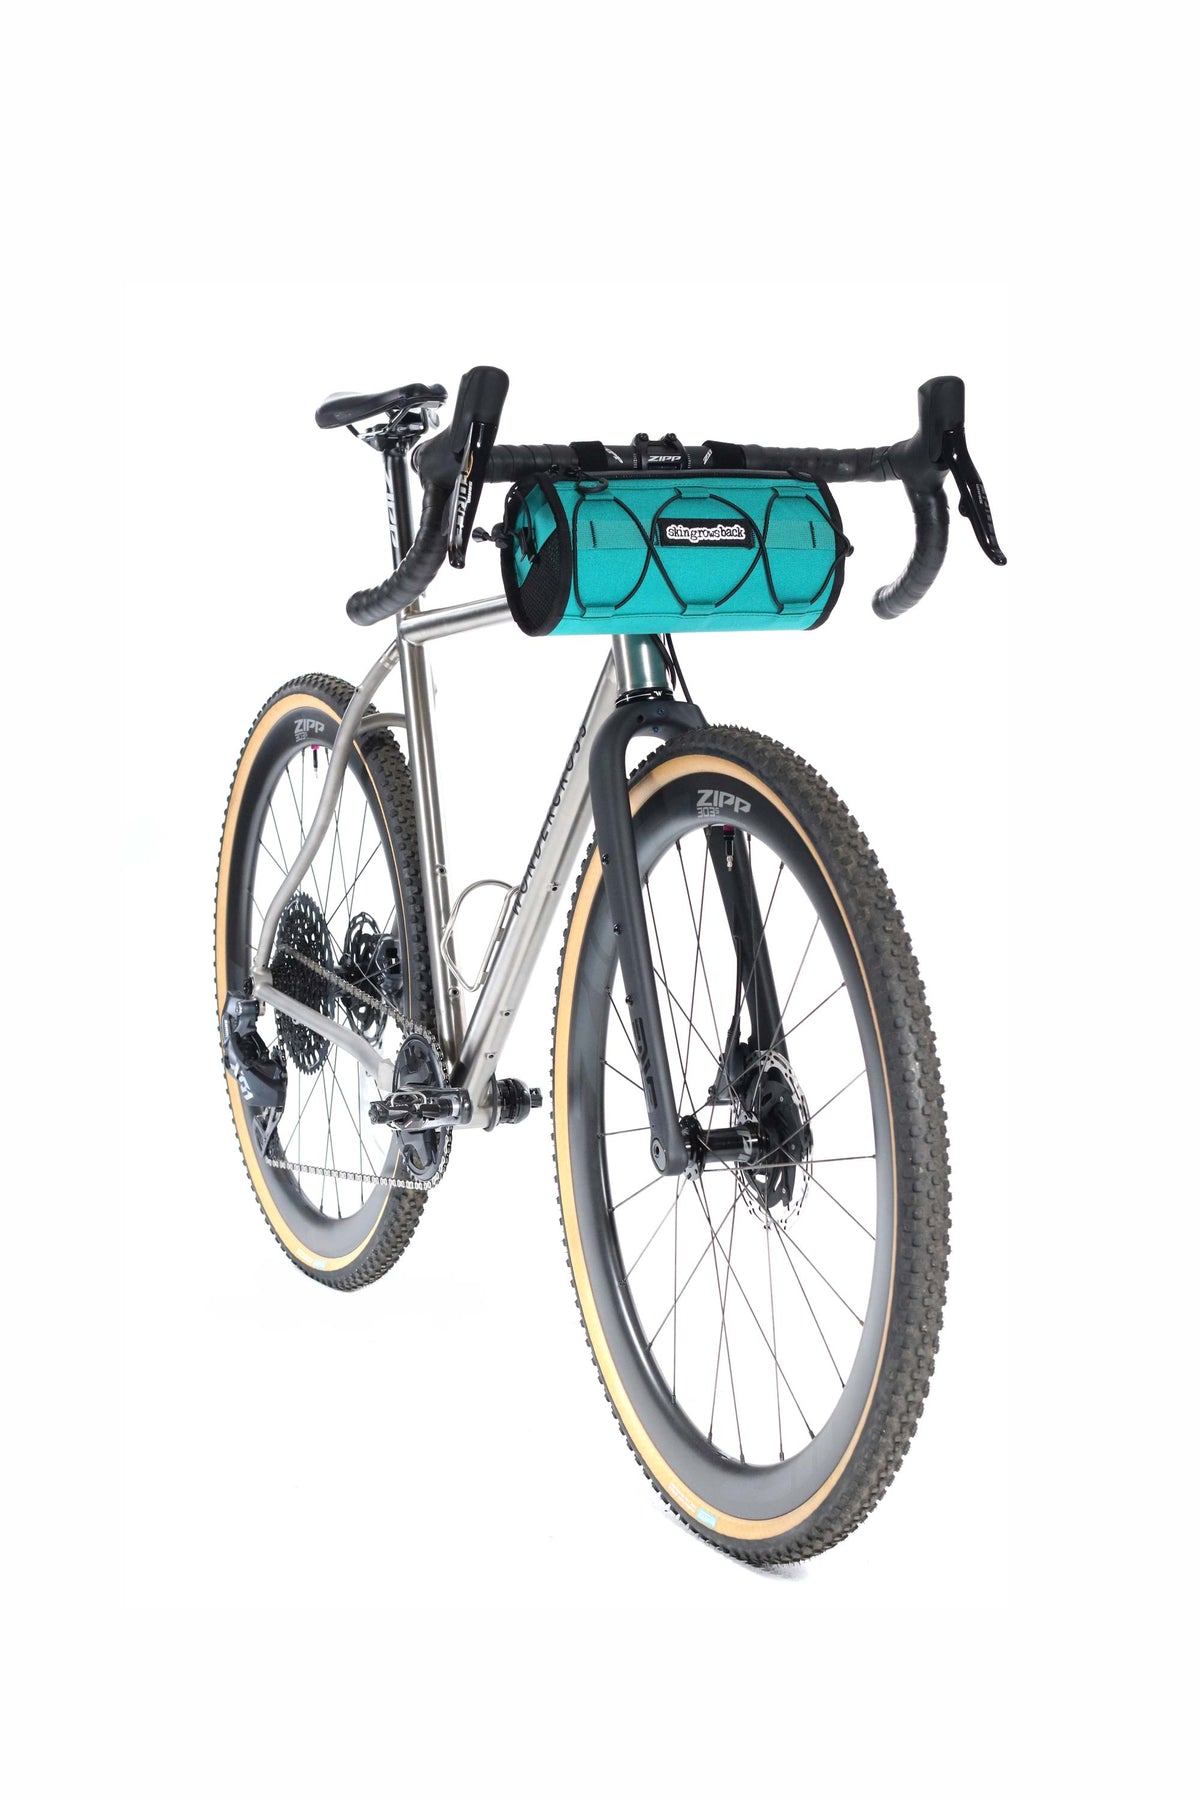 skingrowsback lunchbox cycling handlebar bag gravel bike teal made in australia